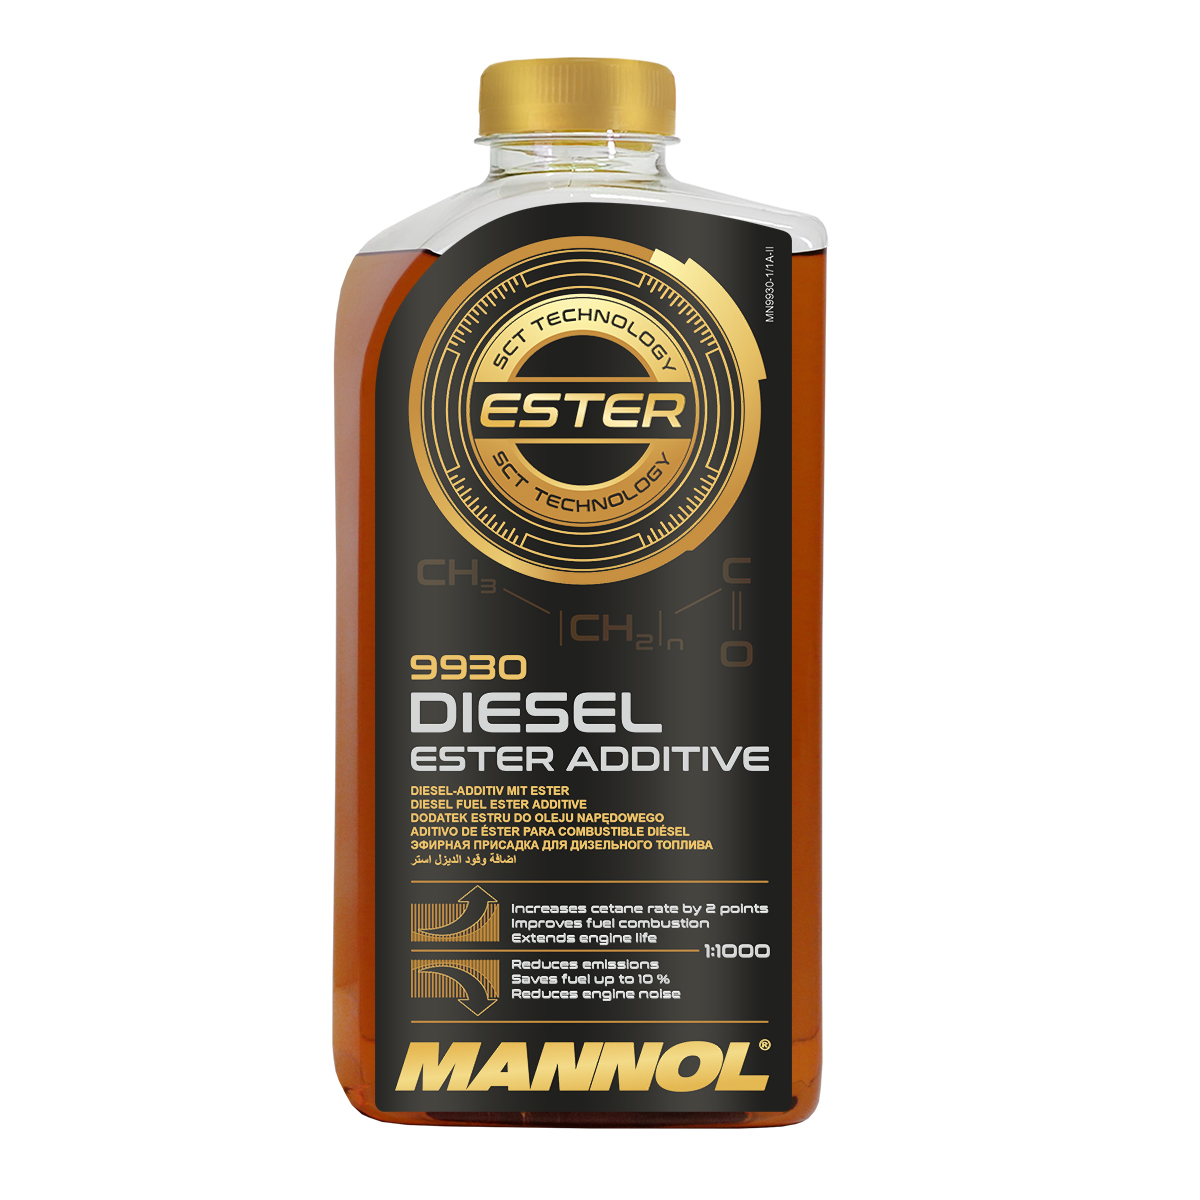 Присадка MANNOL DIESEL ESTER ADDITIVE для дизельного топлива 9930, 1 л